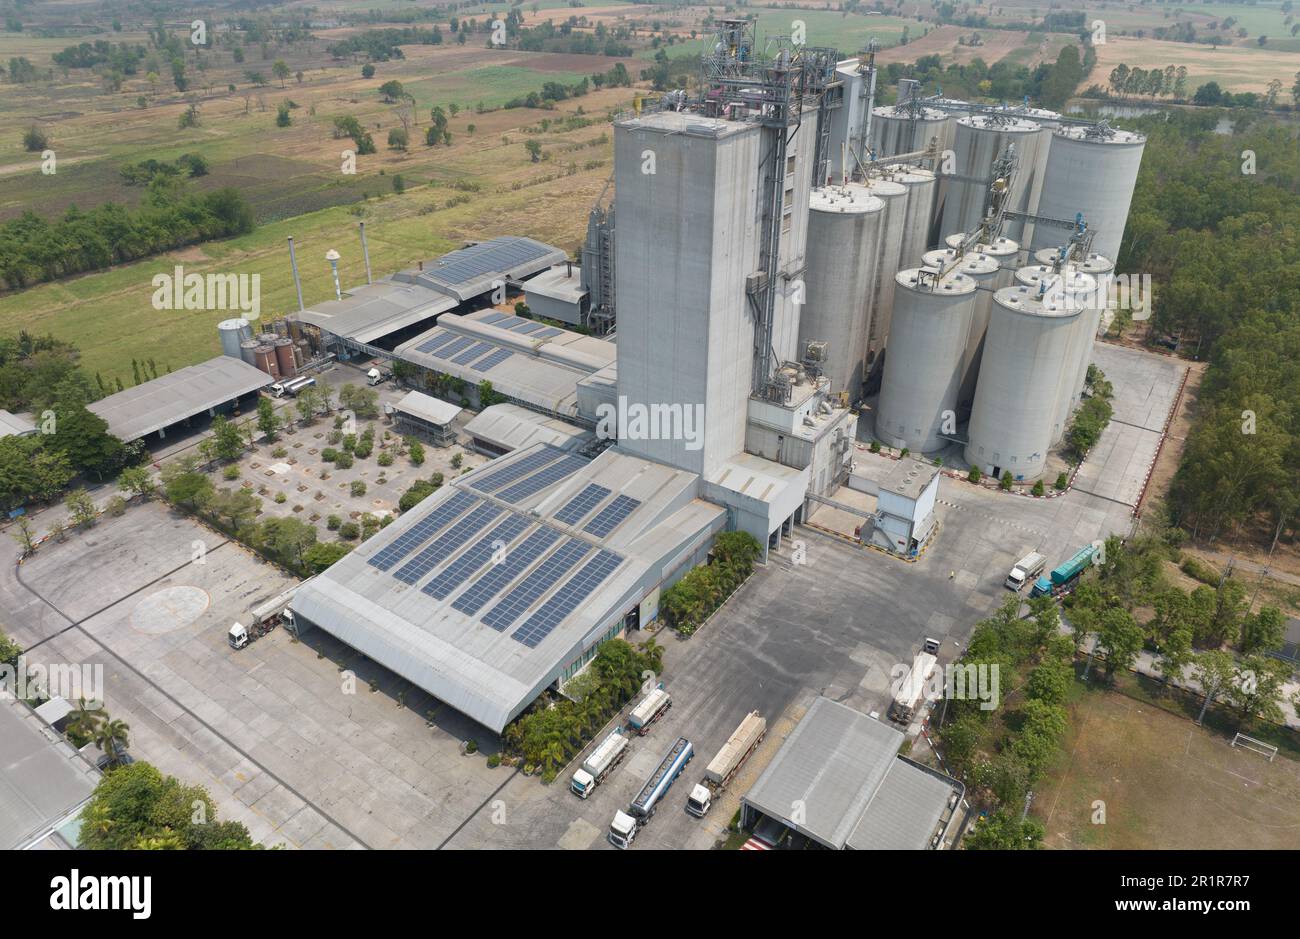 Vista aerea della fabbrica di mangimi. Silos agricoli, silos di deposito di grano e pannelli solari sui tetti di impianti industriali. Paesaggio industriale. Agri Foto Stock